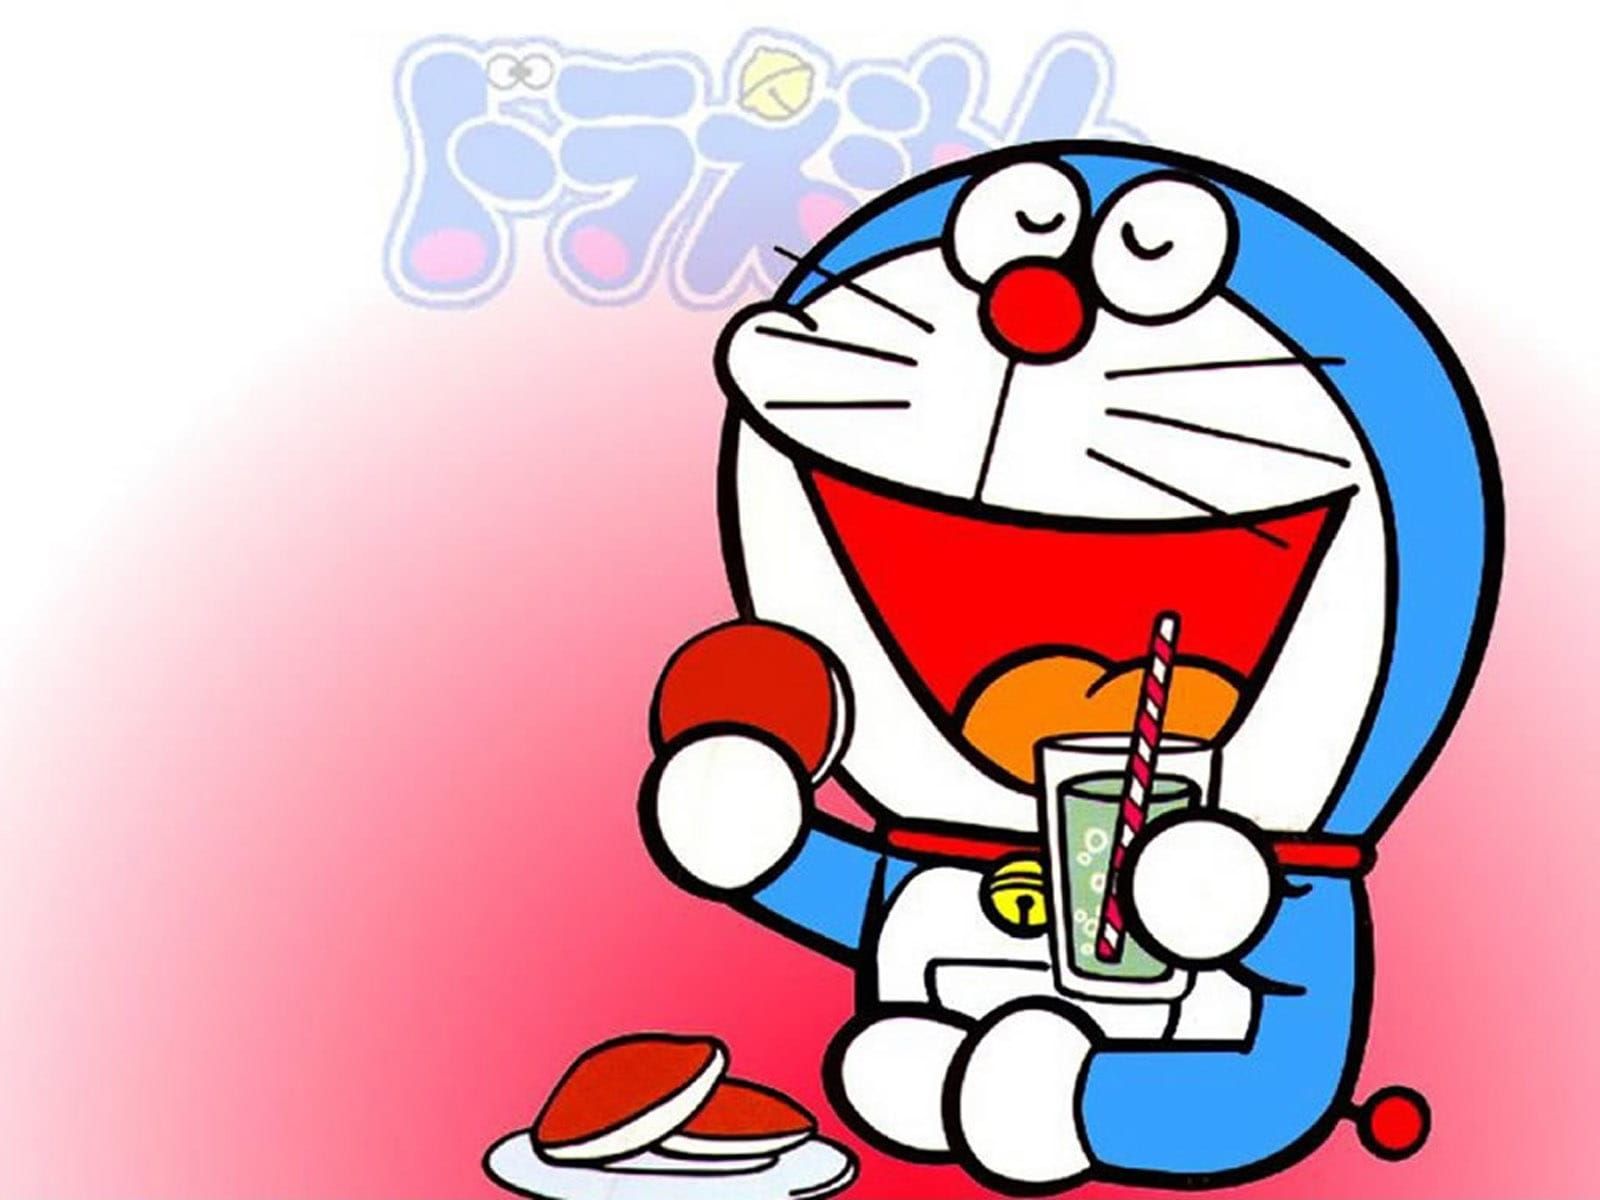 Những thứ vô lý nhưng lại cực kỳ thú vị, là những bí mật khó hiểu trong Doraemon. Hãy cùng khám phá chúng qua hình ảnh ngộ nghĩnh và đáng yêu.